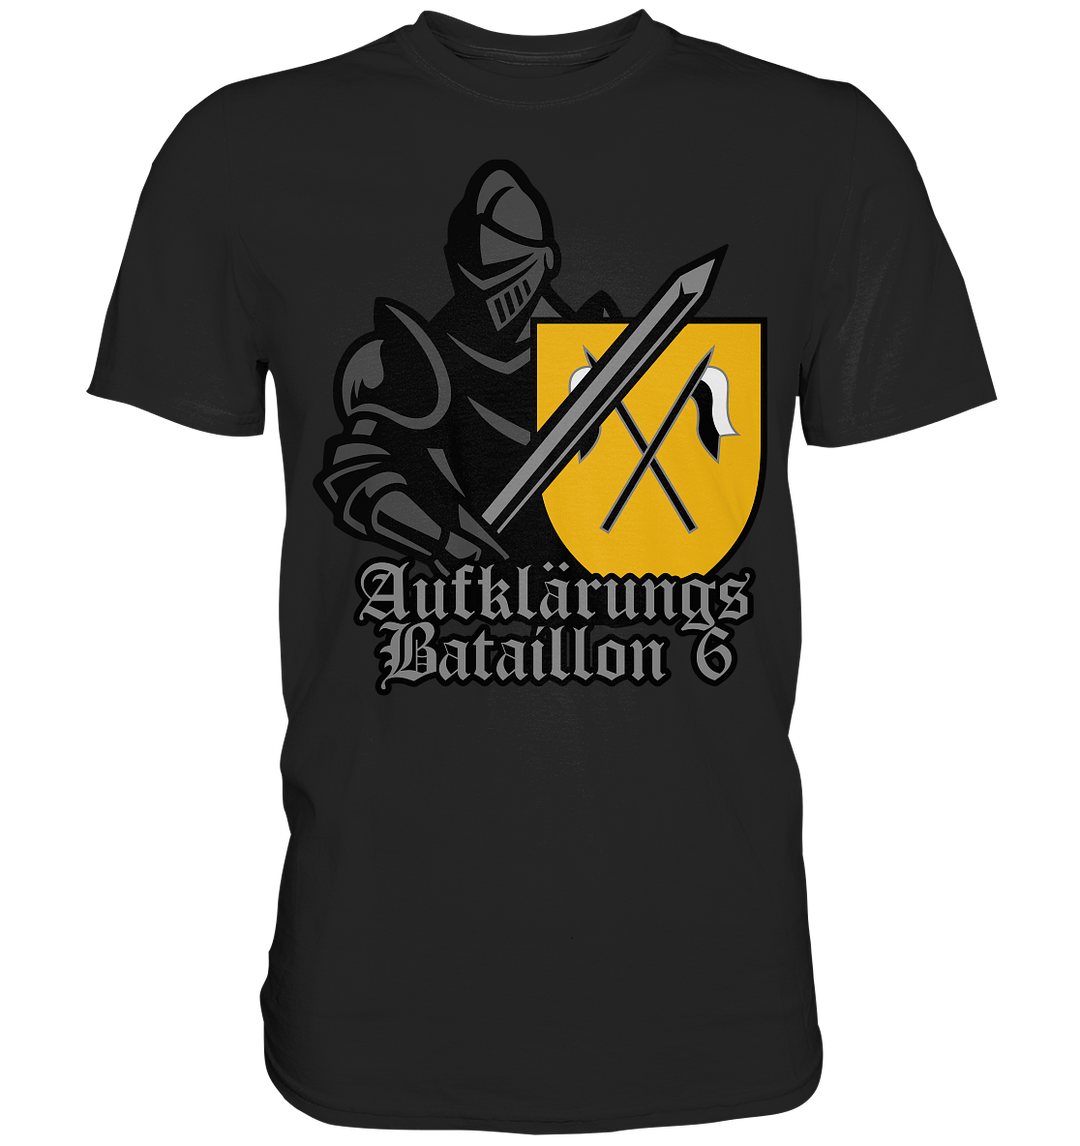 "AufklBtl 6 - Ritter"  - Premium Shirt